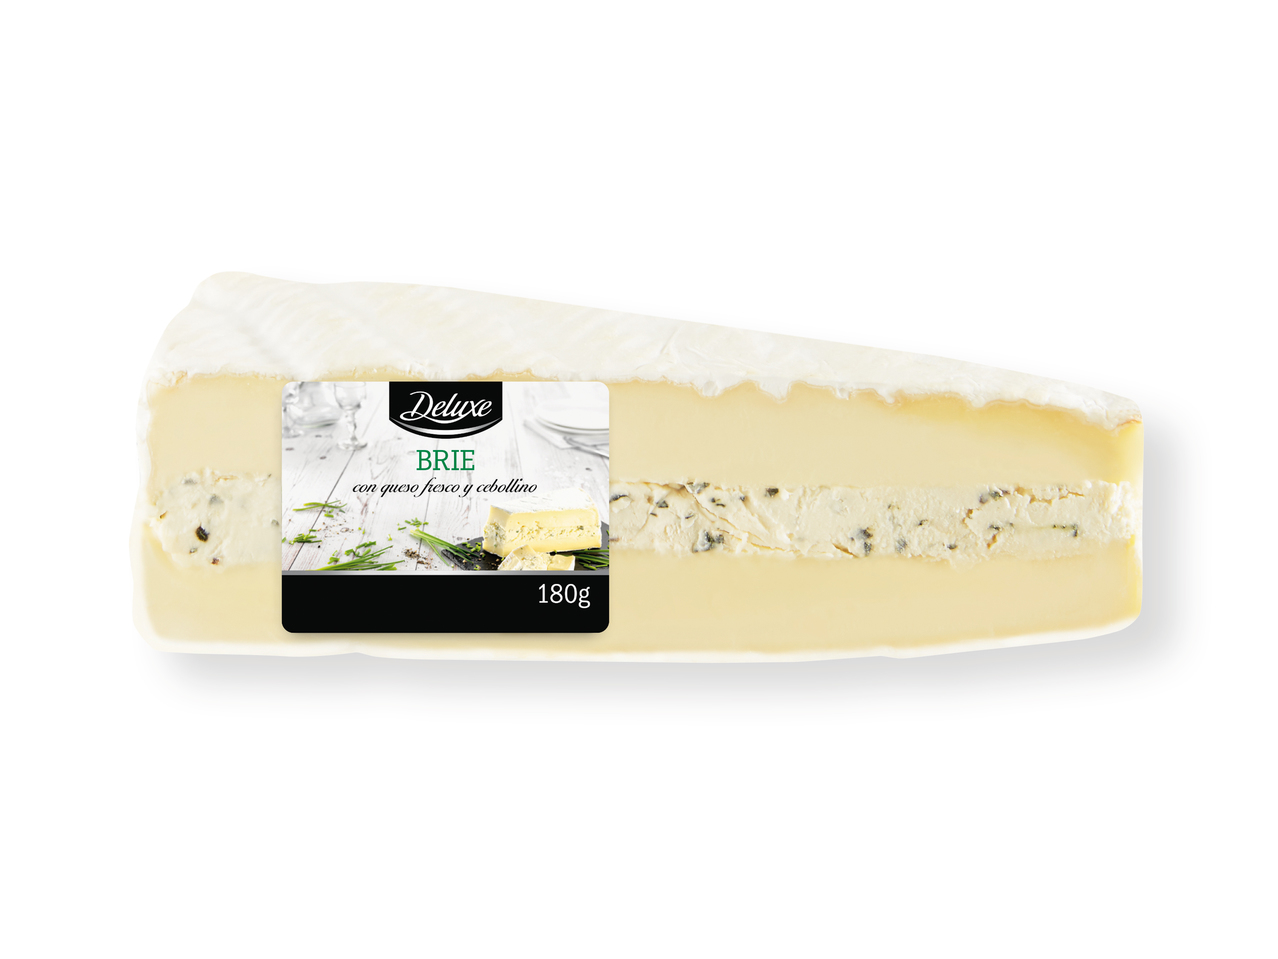 'Deluxe(R)' Queso Brie relleno